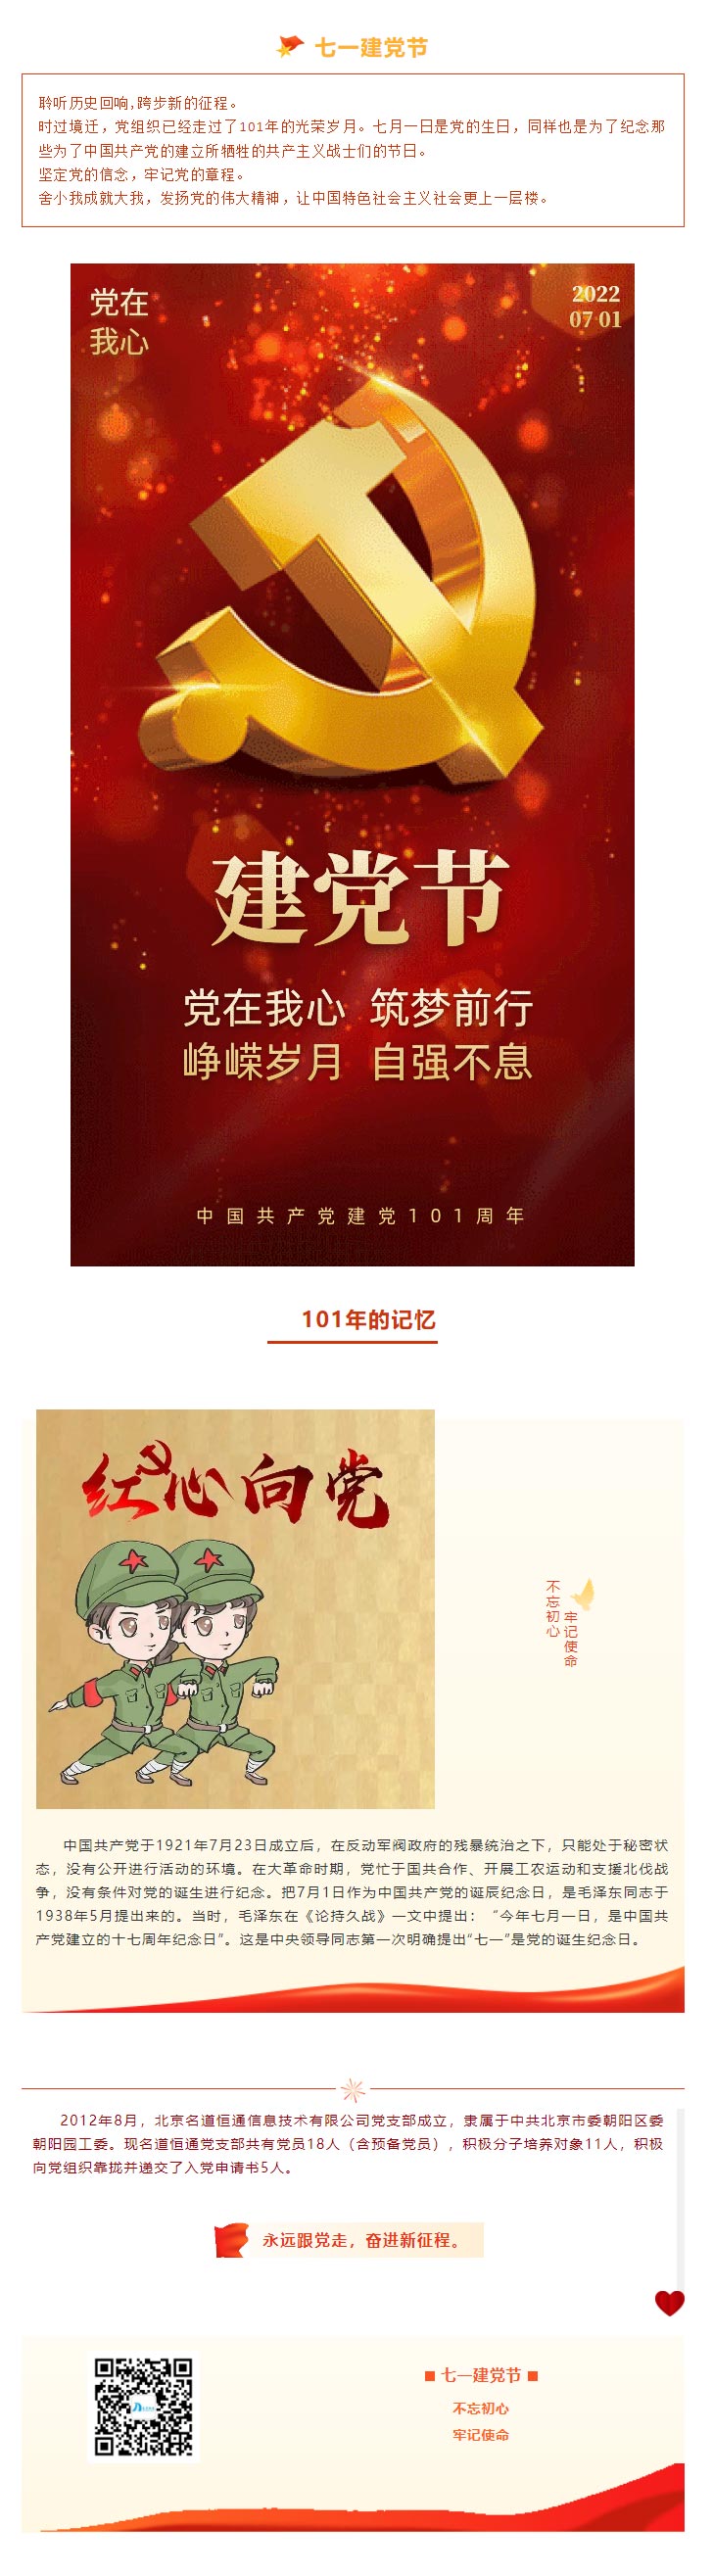 热烈庆祝中国共产党成立101周年(图1)